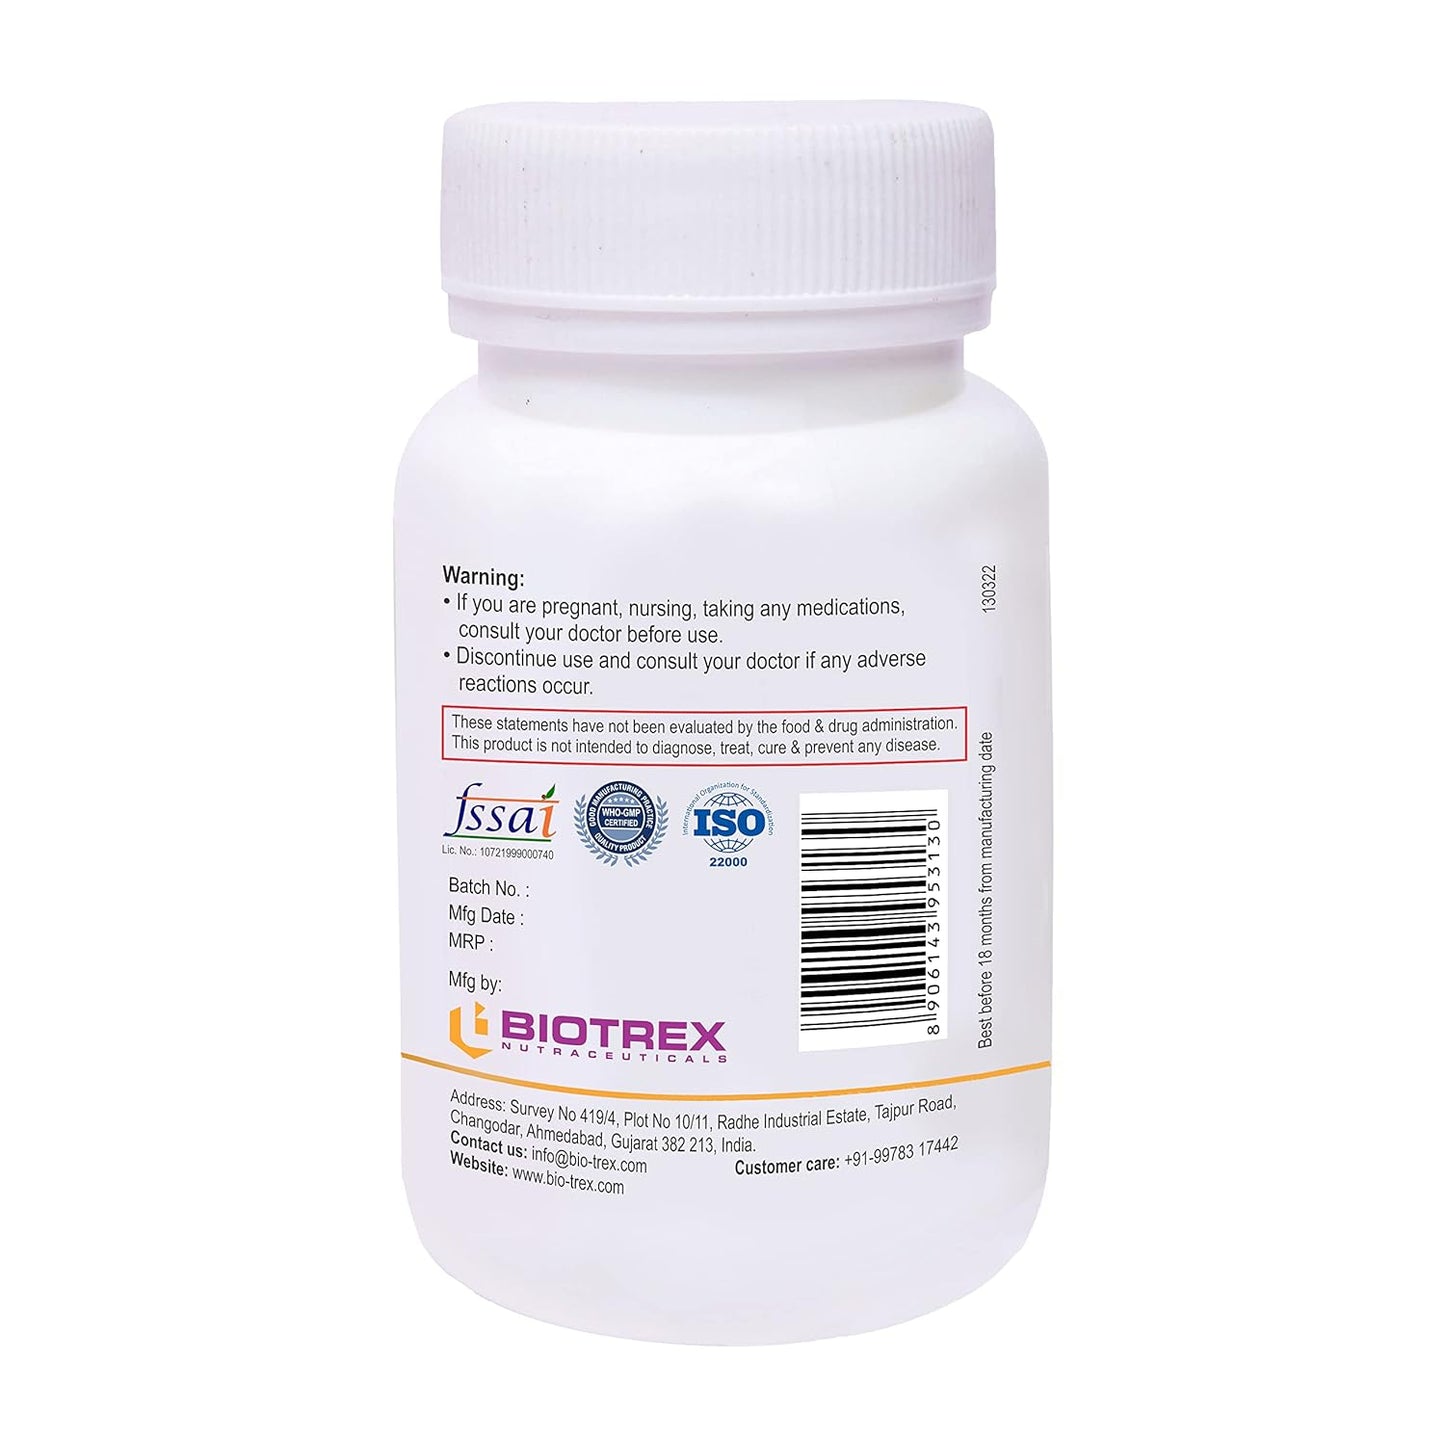 Biotrex Potassium Citrate 800mg - 60 Capsules